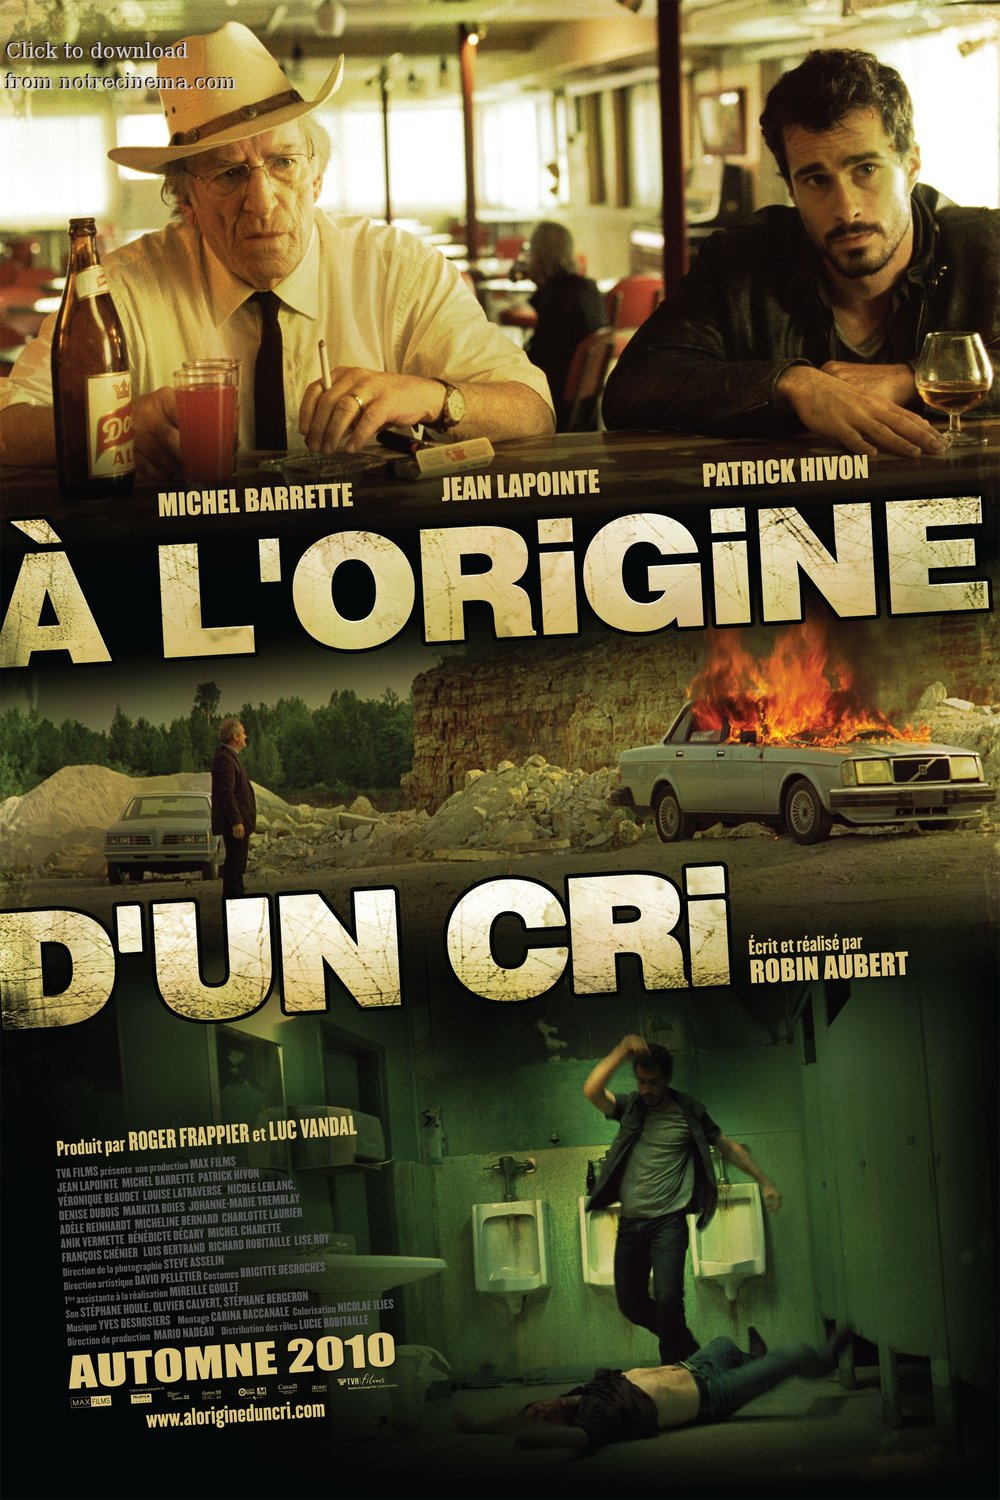 Poster of the movie À l'origine d'un cri